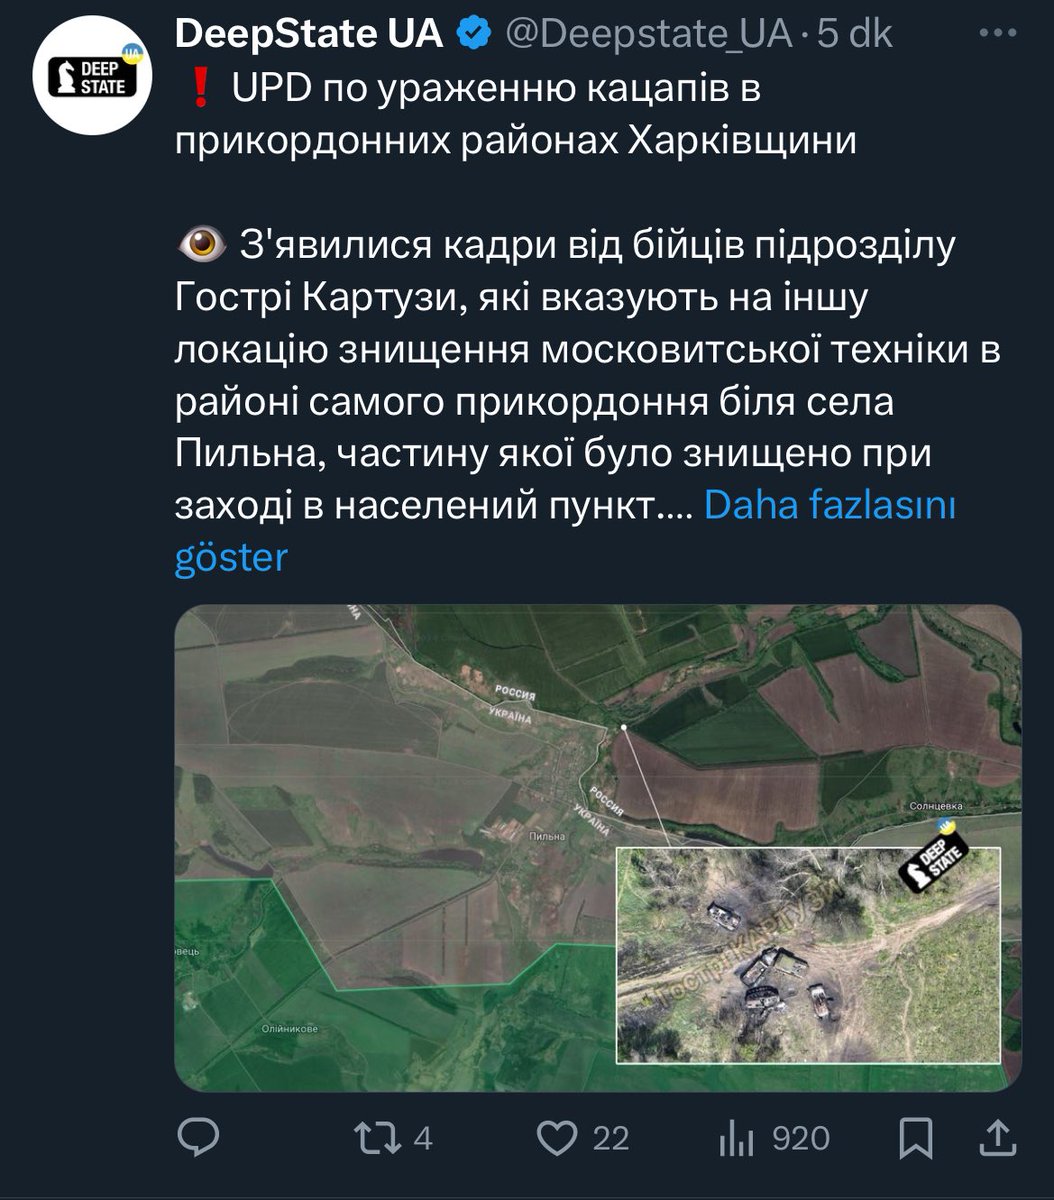 Ukrayna Deepstate Kharkiv’de bu sabah paylaştığı Geolokasyon’da hata yaptıklarını açıkladı. Rus birliklerinin henüz Kharkiv’e girdiği doğrulanmadı. Uydu görüntülerine göre Vurulan araçlarından ise en az 1 tanesi uzun süredir aynı bölgede. İki tarafta yoğun propaganda yapıyor